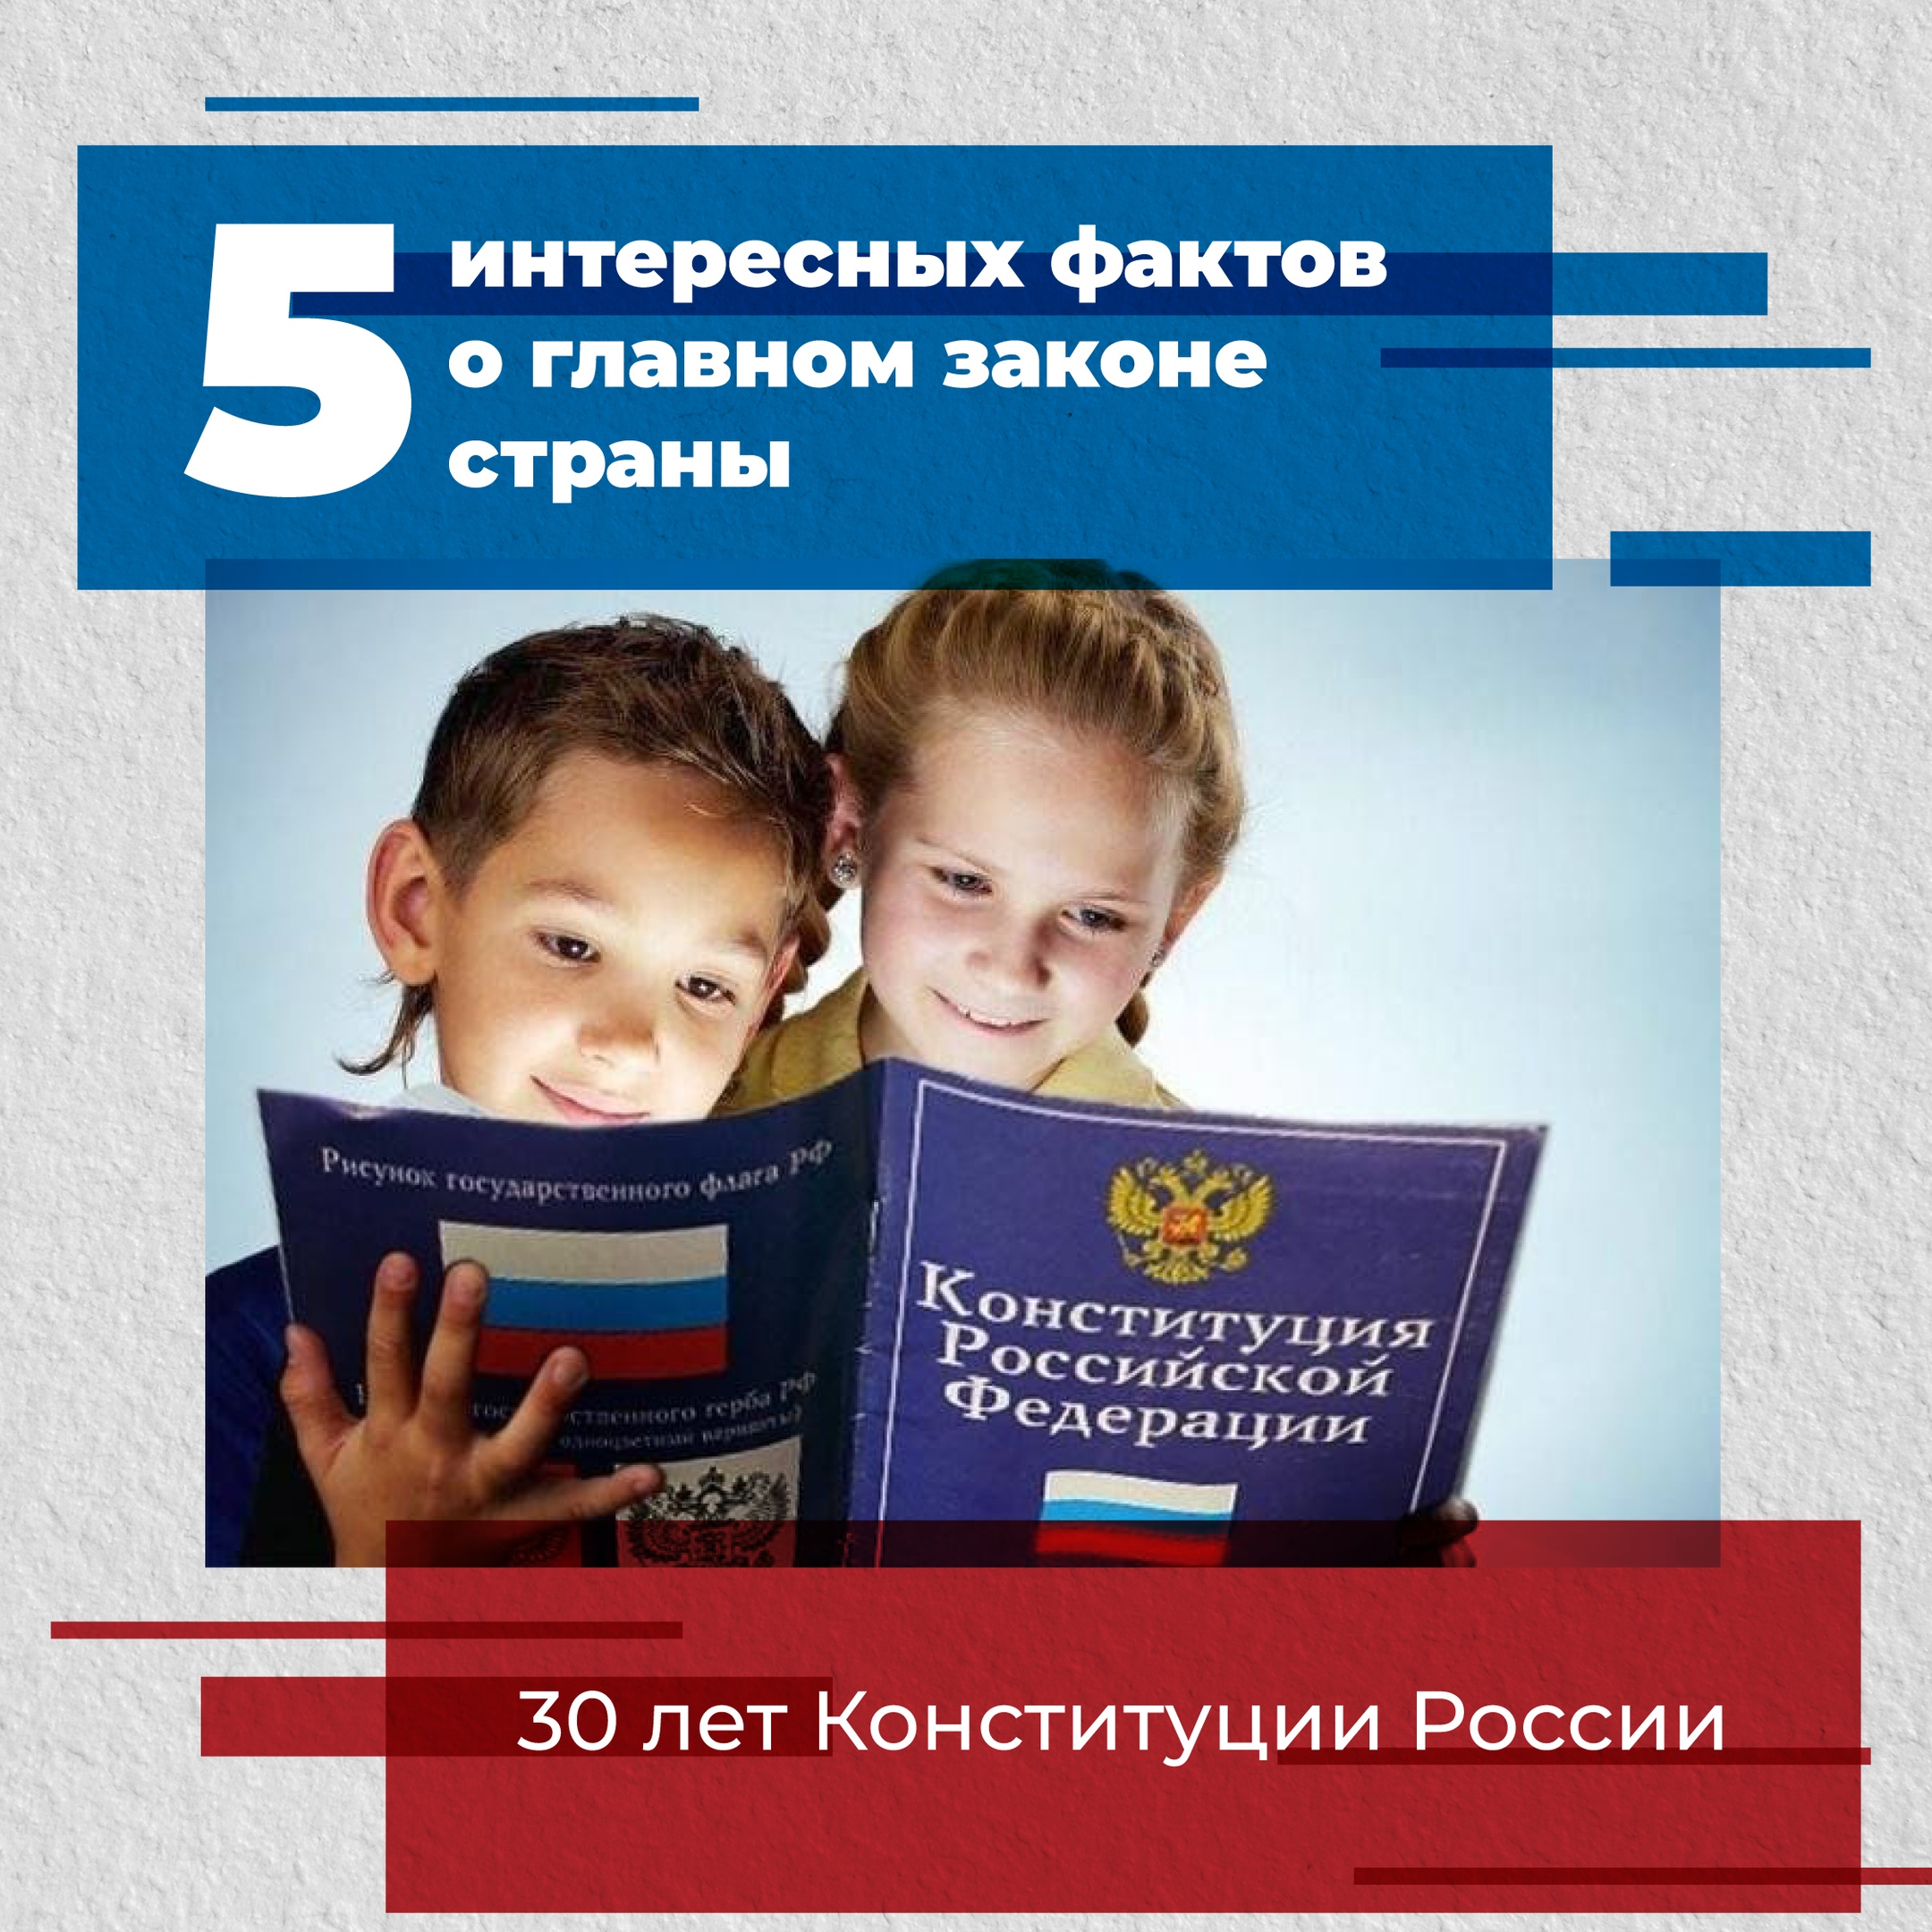 12 декабря  - День Конституции РФ.